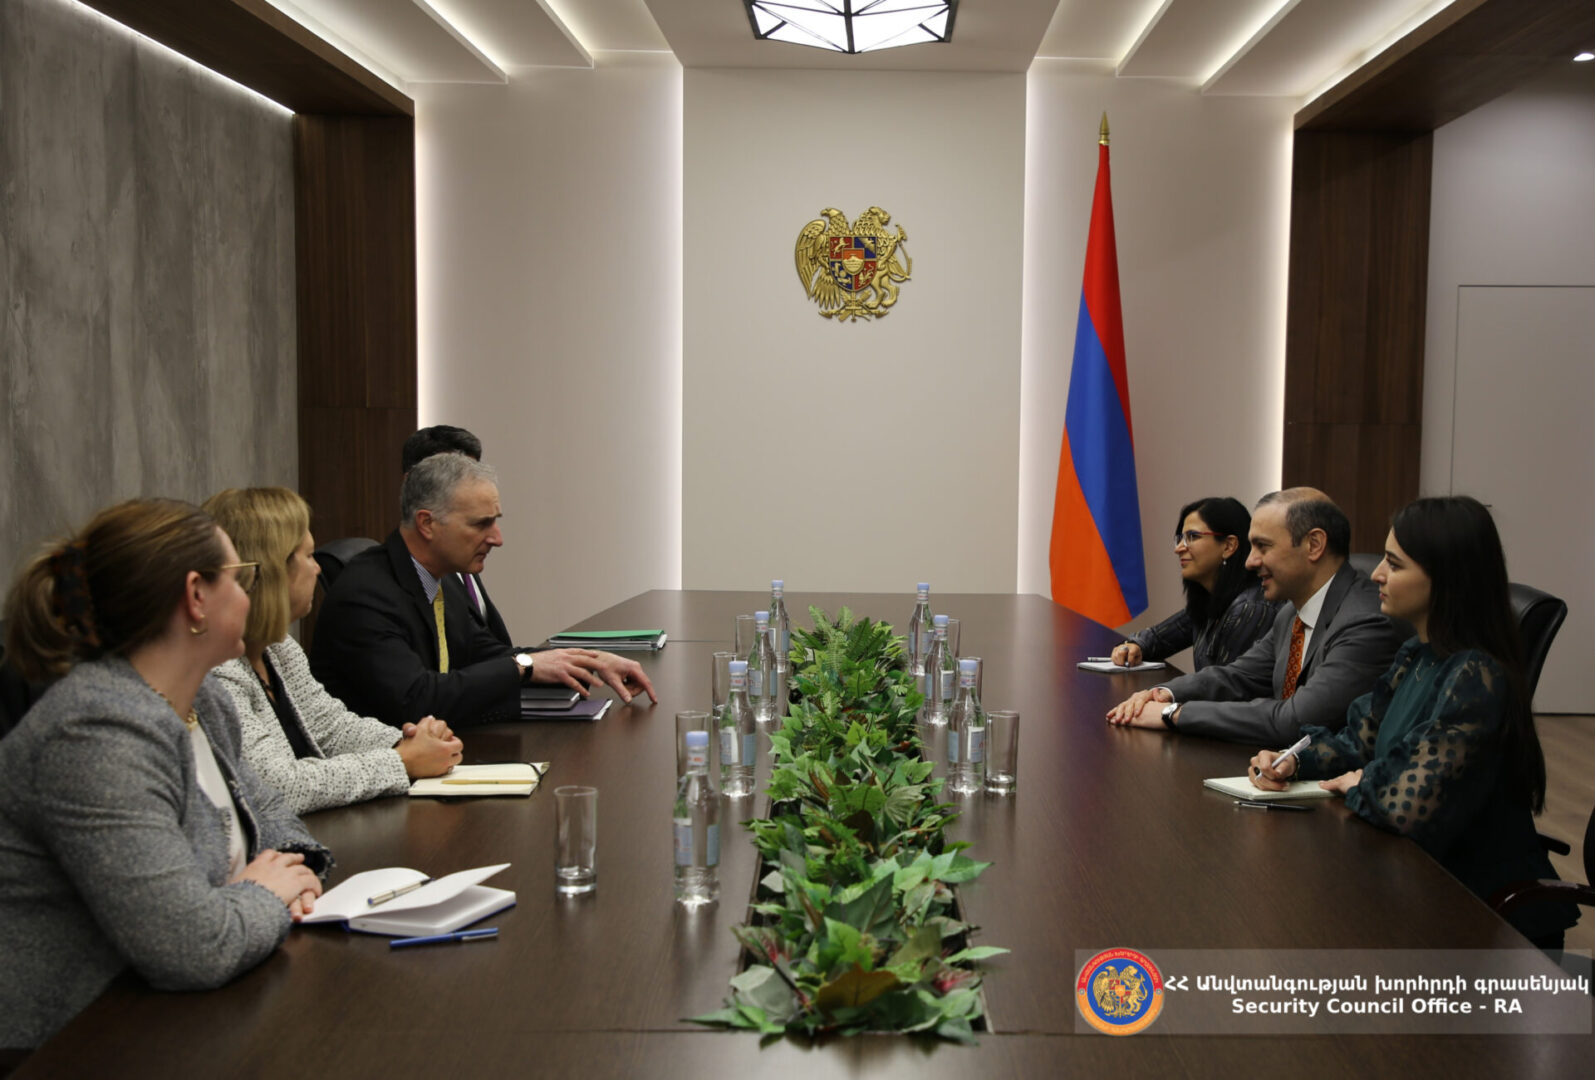 Grigoryan ile Bono Ermenistan-Azerbaycan normalleşmesini görüştü